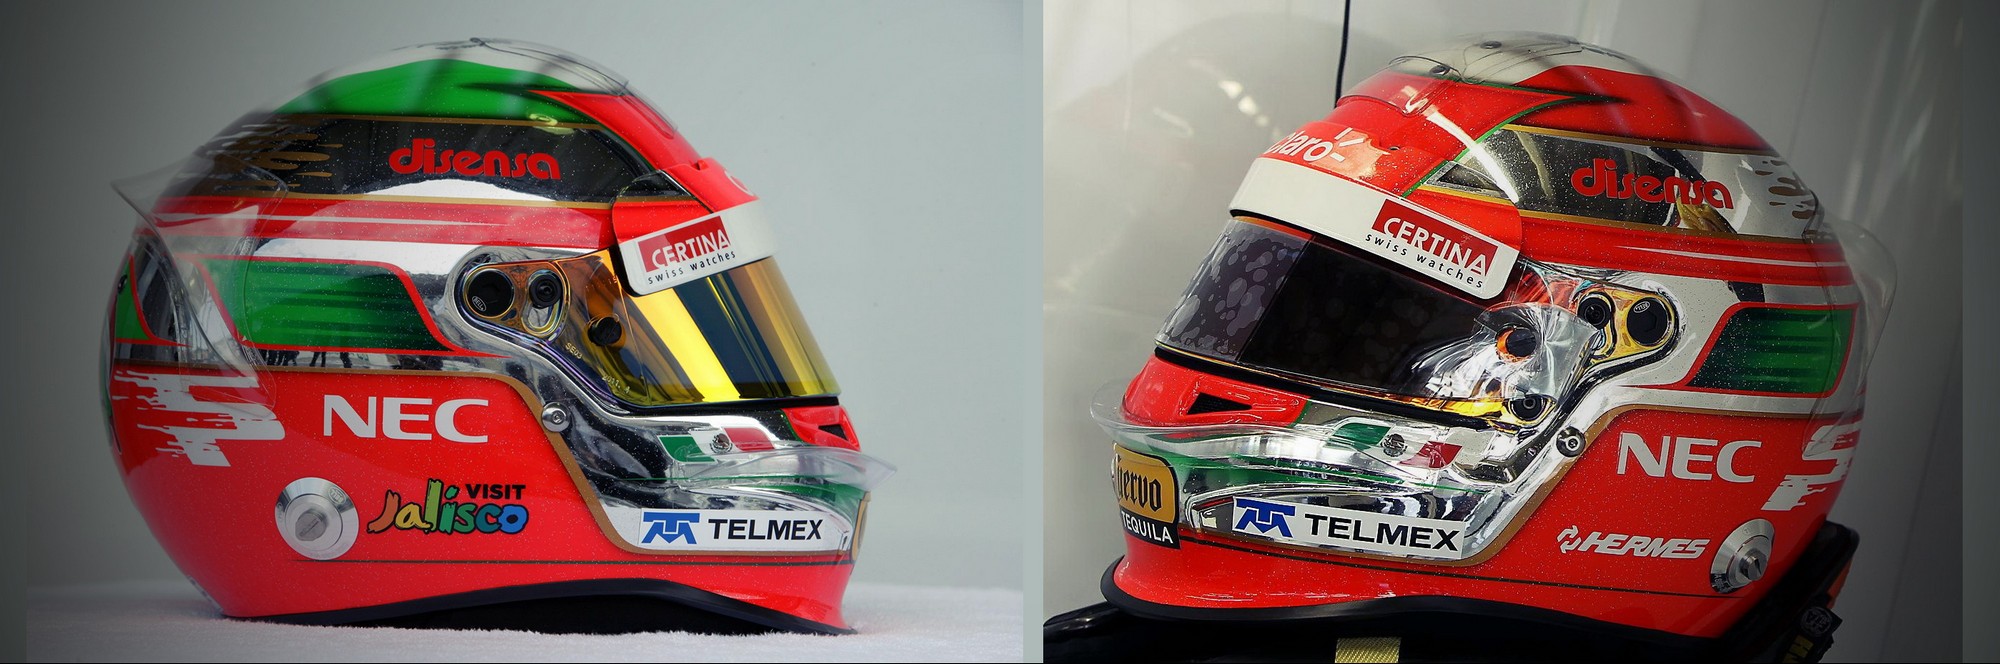 Шлем Серхио Переса на Гран-При Бразилии 2011 | 2011 Brazilian Grand Prix helmet of Sergio Perez